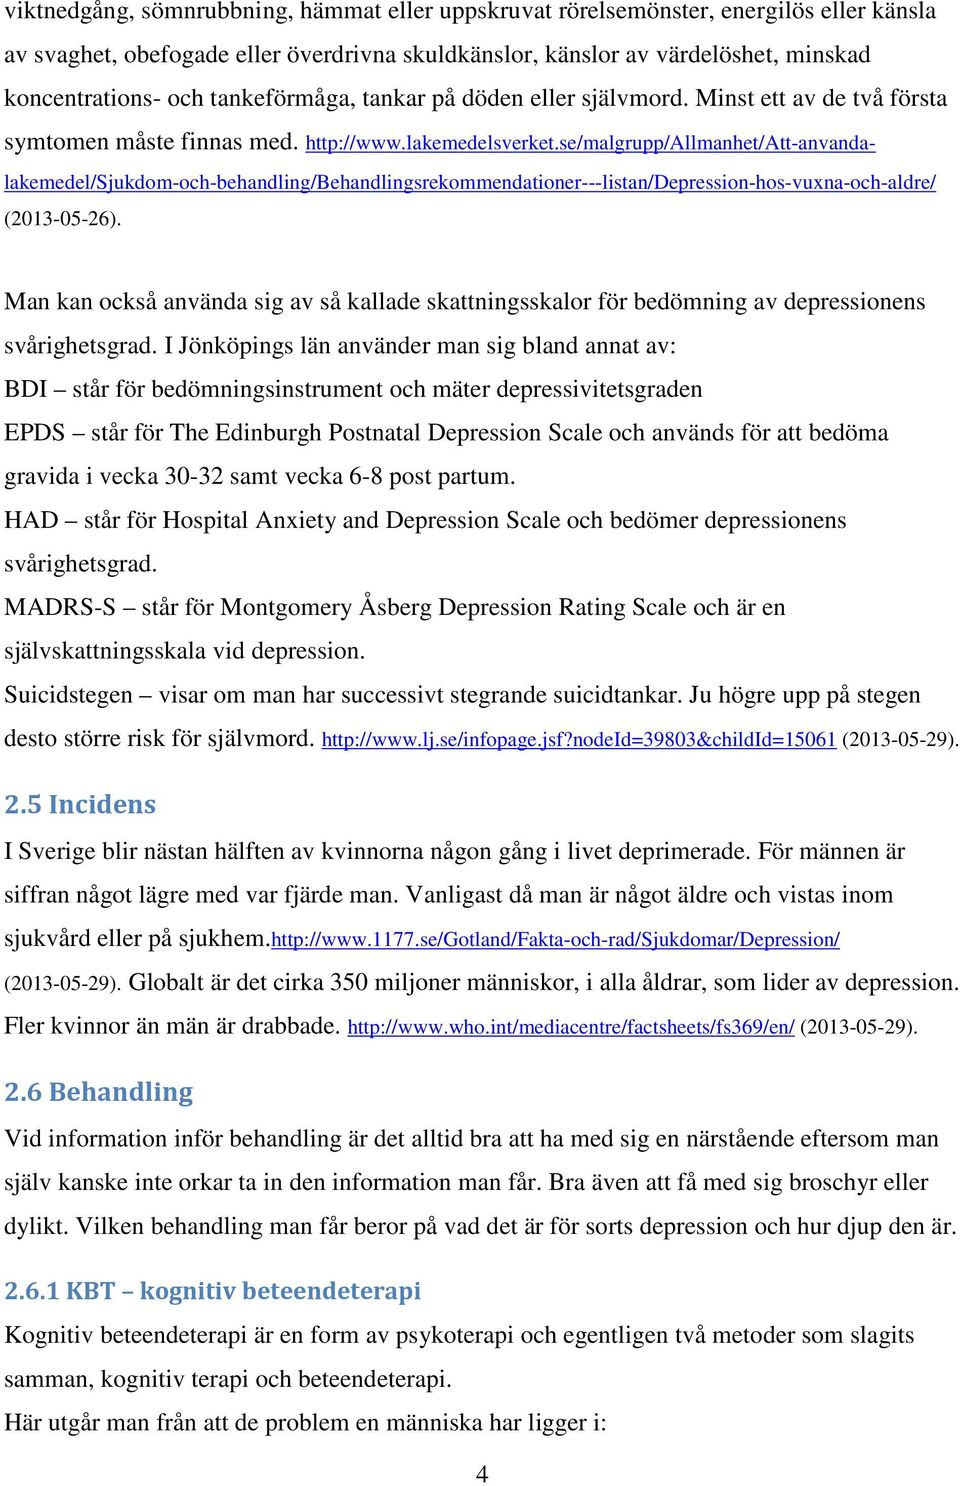 se/malgrupp/allmanhet/att-anvandalakemedel/sjukdom-och-behandling/behandlingsrekommendationer---listan/depression-hos-vuxna-och-aldre/ (2013-05-26).